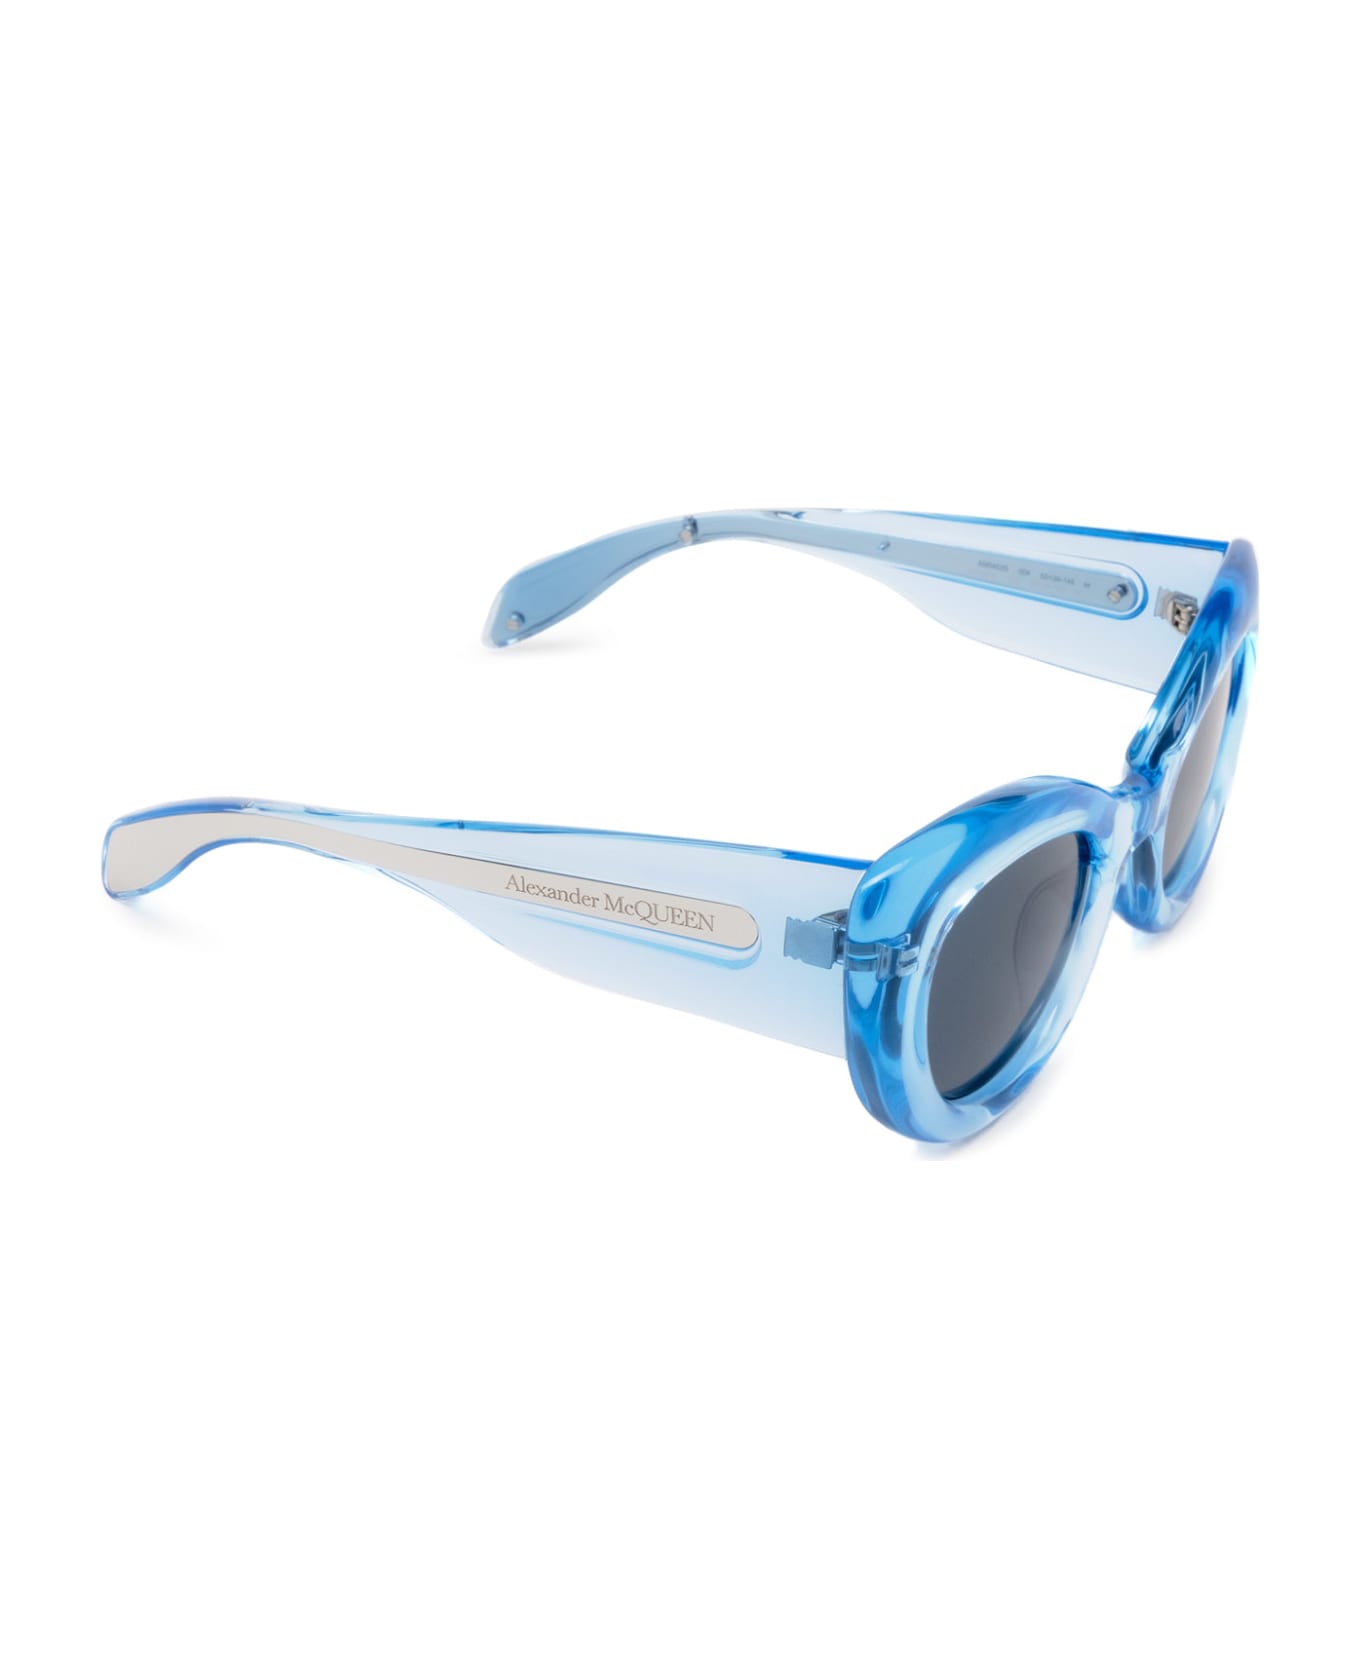 Alexander McQueen Eyewear Am0403s Light Blue Sunglasses - Light Blue